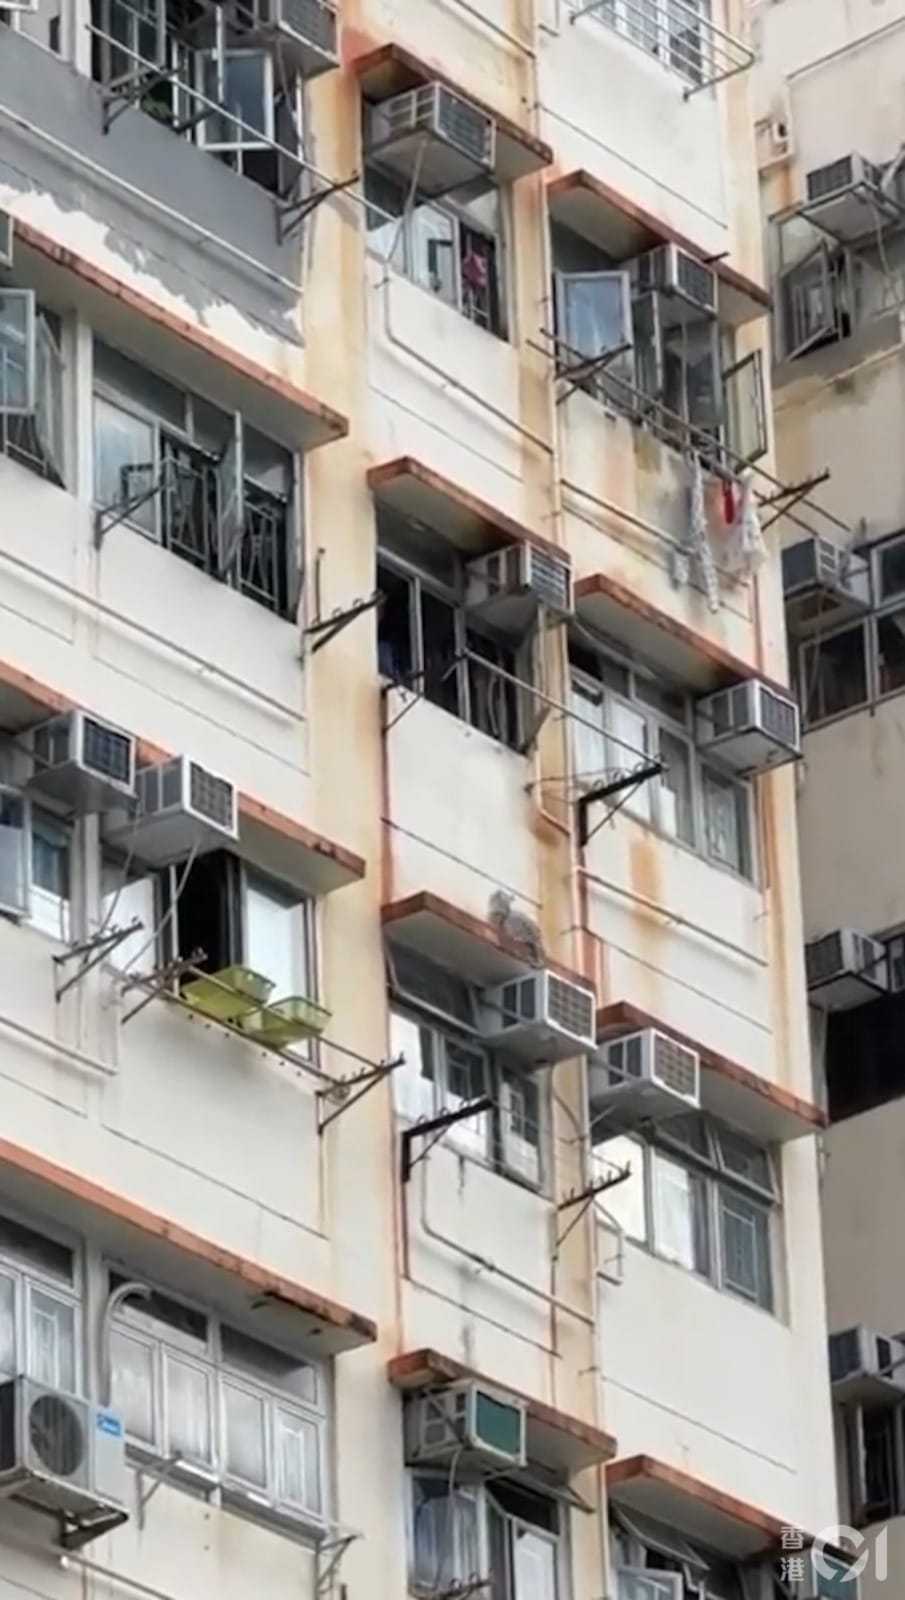 猫爬出7楼窗外掉下6楼 要跳回去却失足坠楼毙命 1